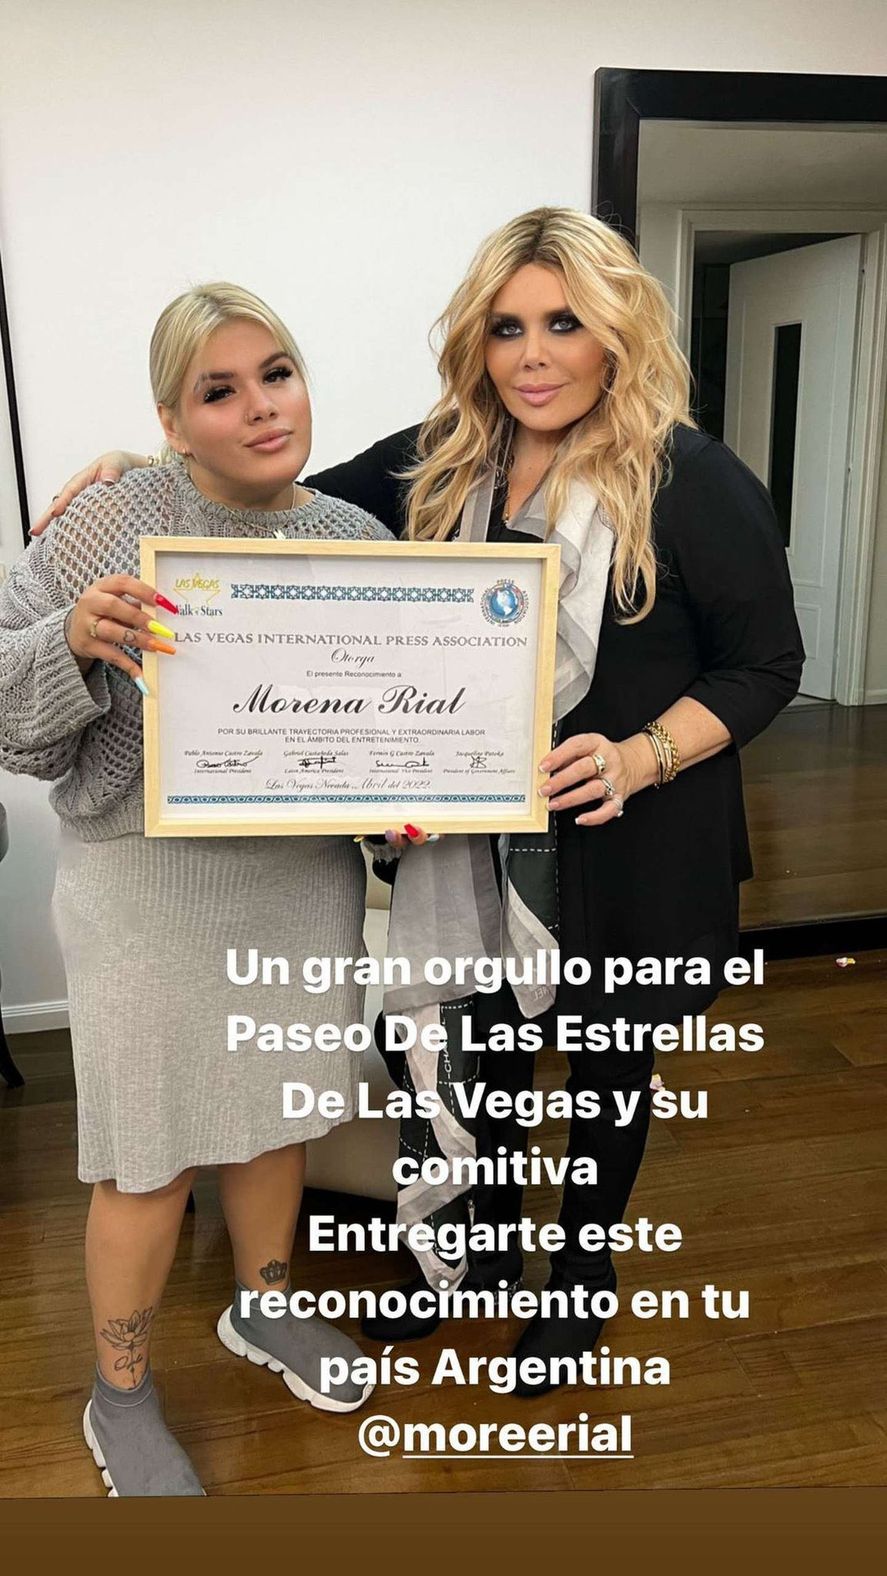 More Rial, la hija del periodista Jorge Rial fue condecorada por una organización de Las Vegas